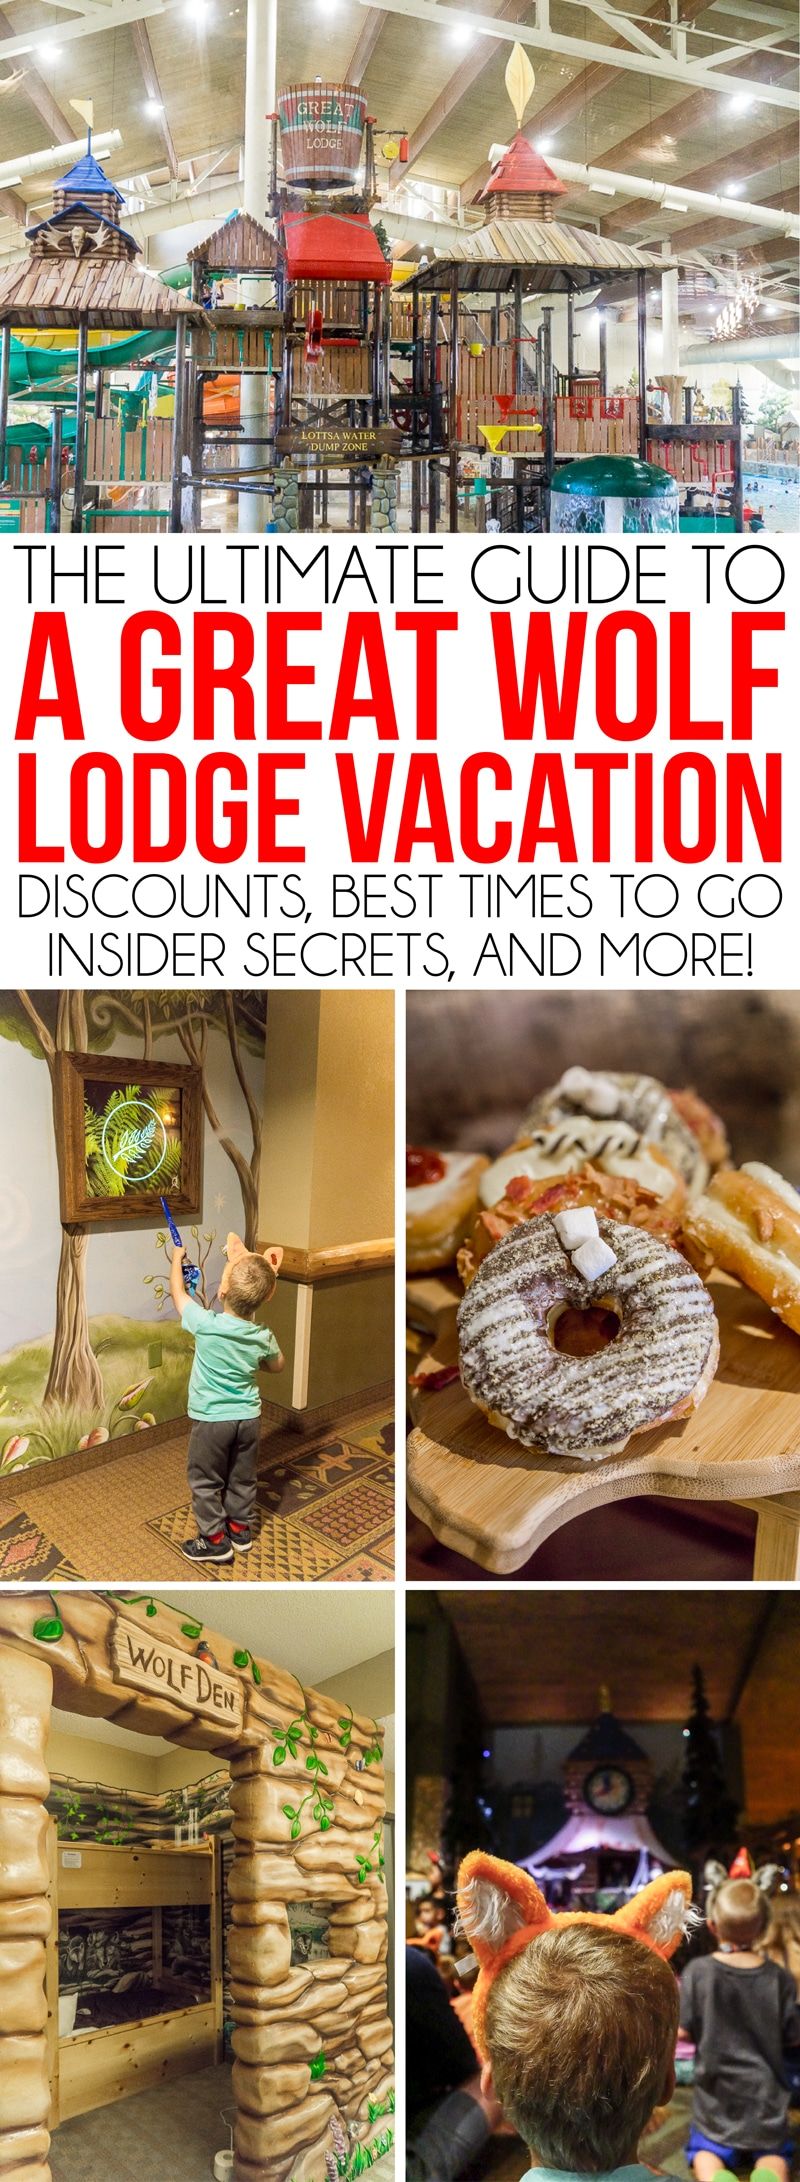 Great Wolf Lodge Grapevine sobib suurepäraselt igas vanuses lastega peredele